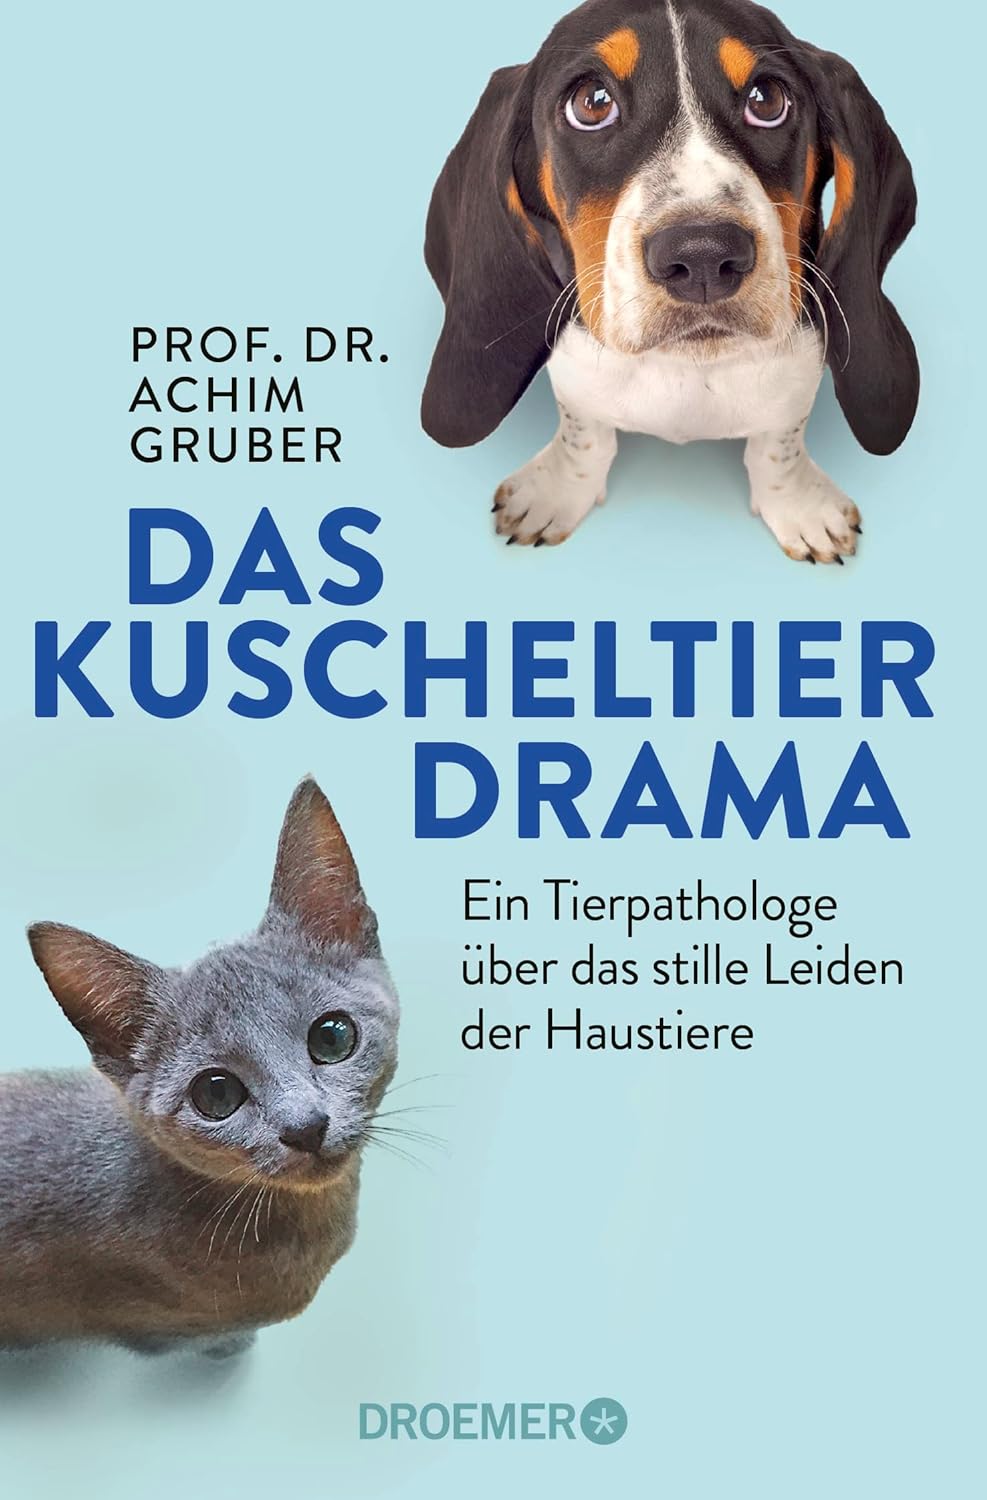 Droemer - Das Kuscheltierdrama [Prof. Dr. Achim Gruber]